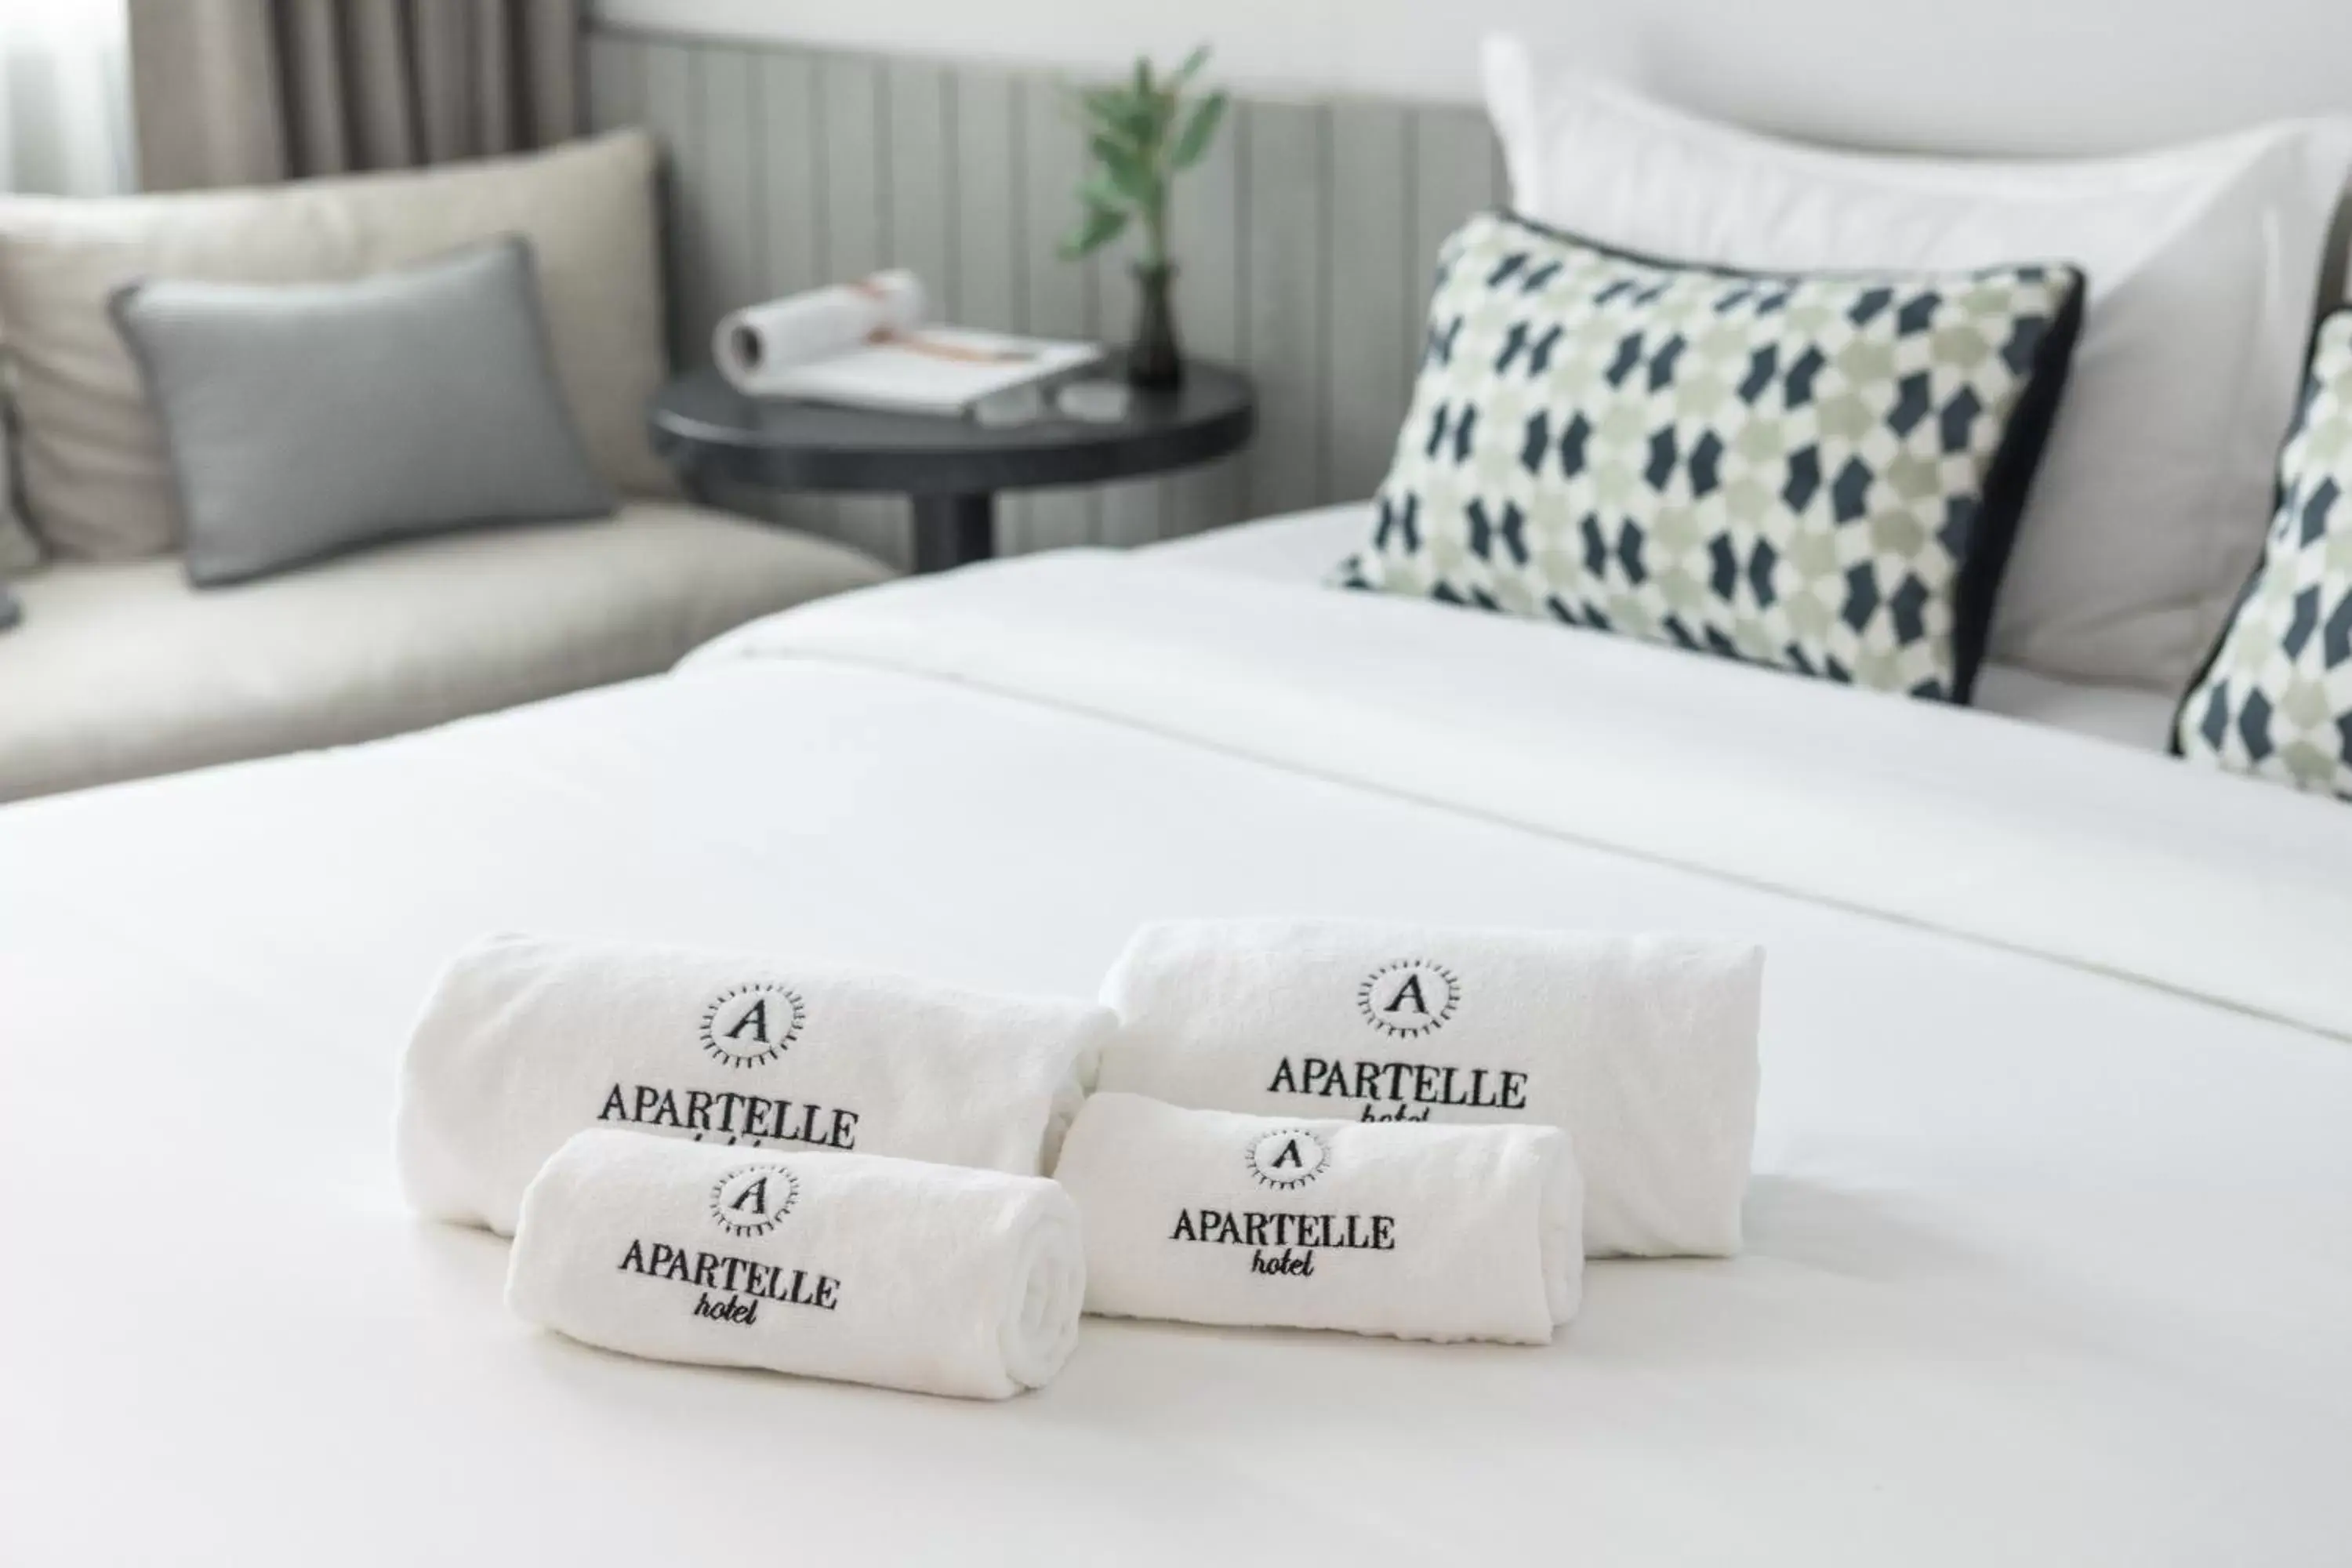 Bed in Apartelle Jatujak Hotel